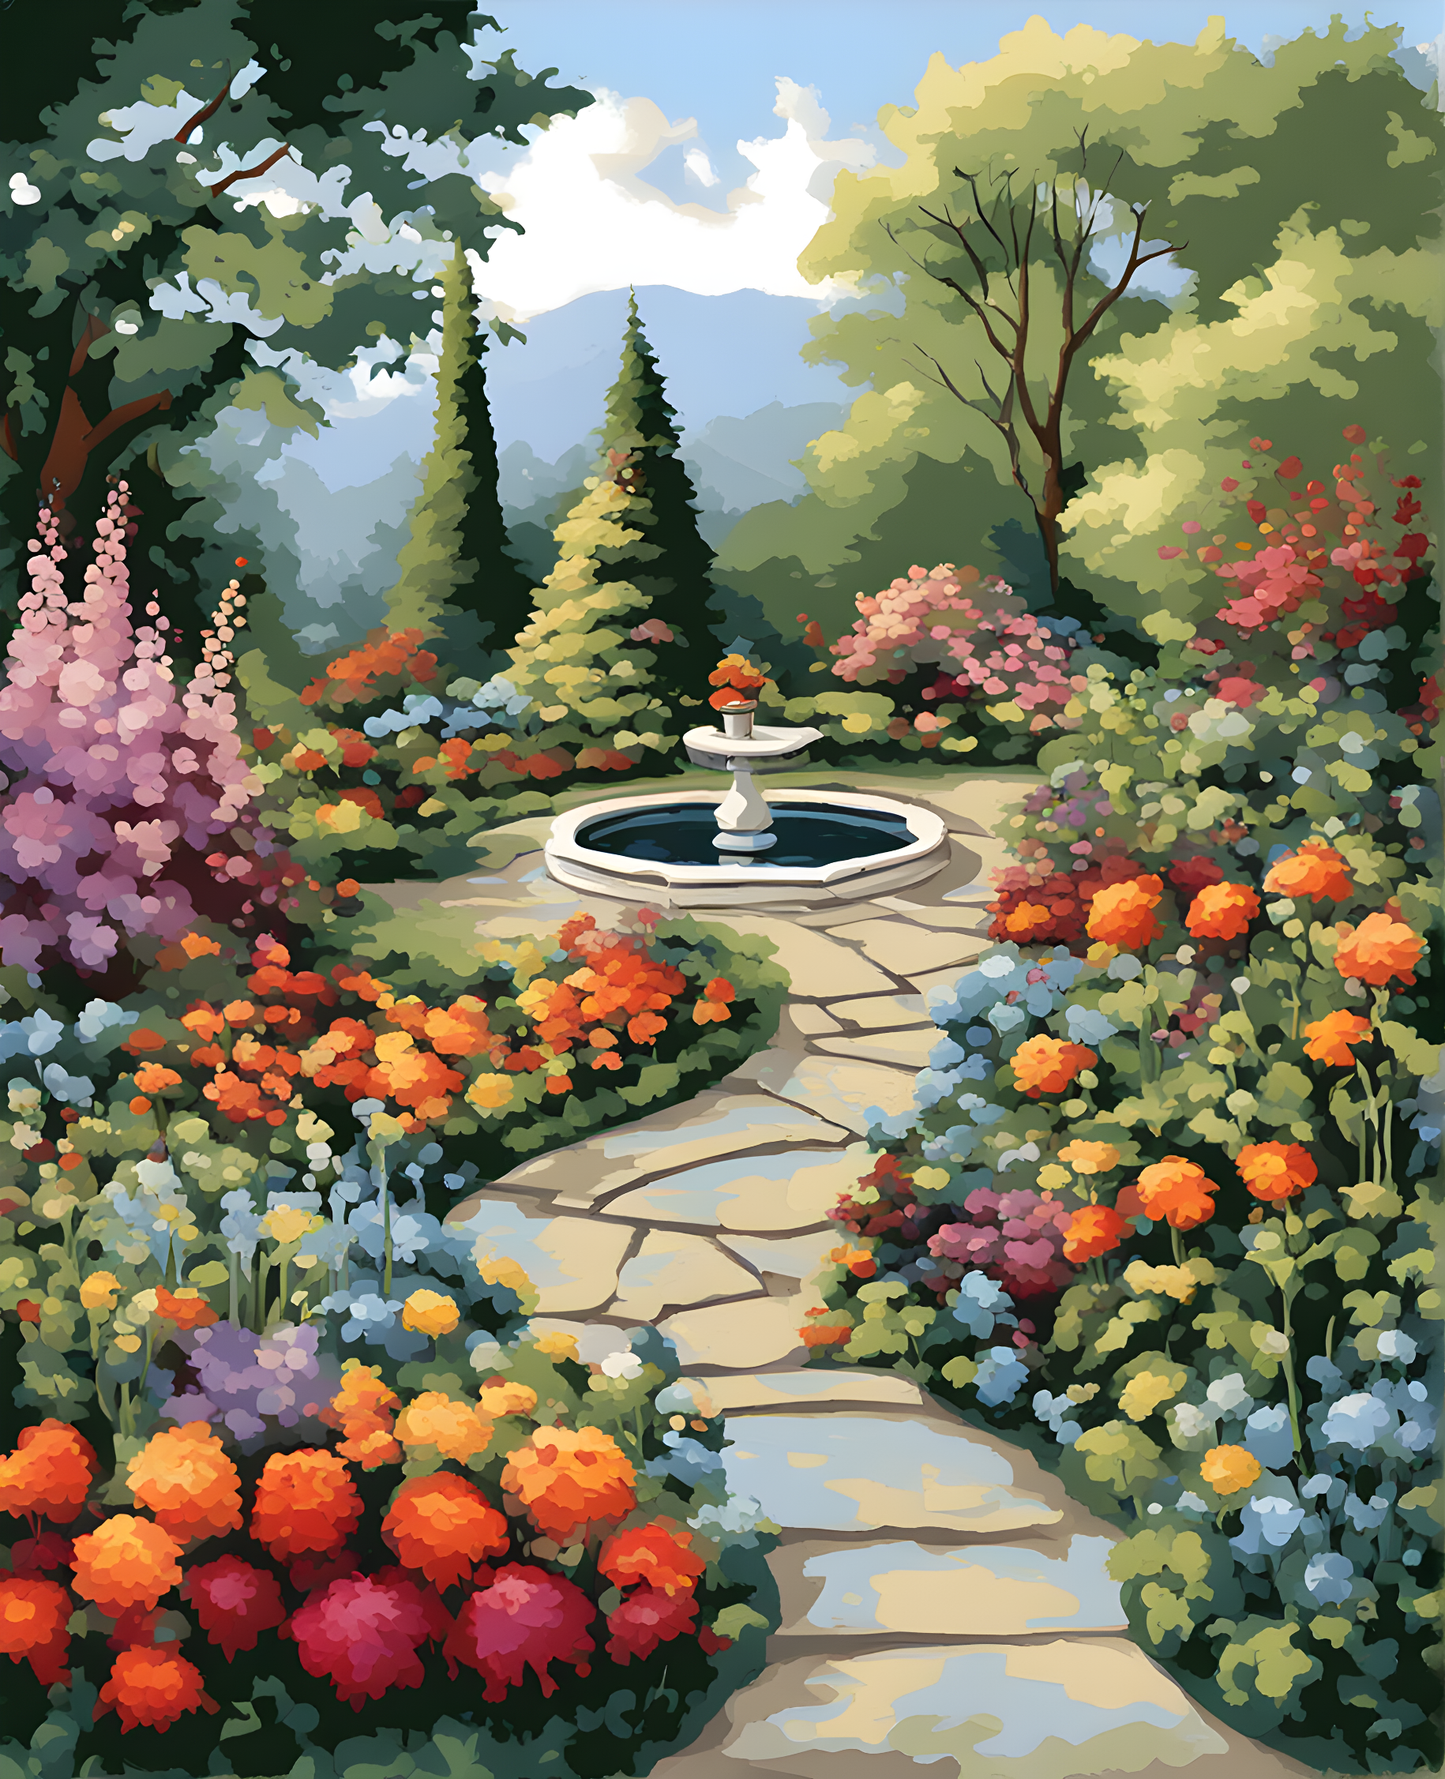 Garden Splendor (1) - Van-Go Paint-By-Number Kit